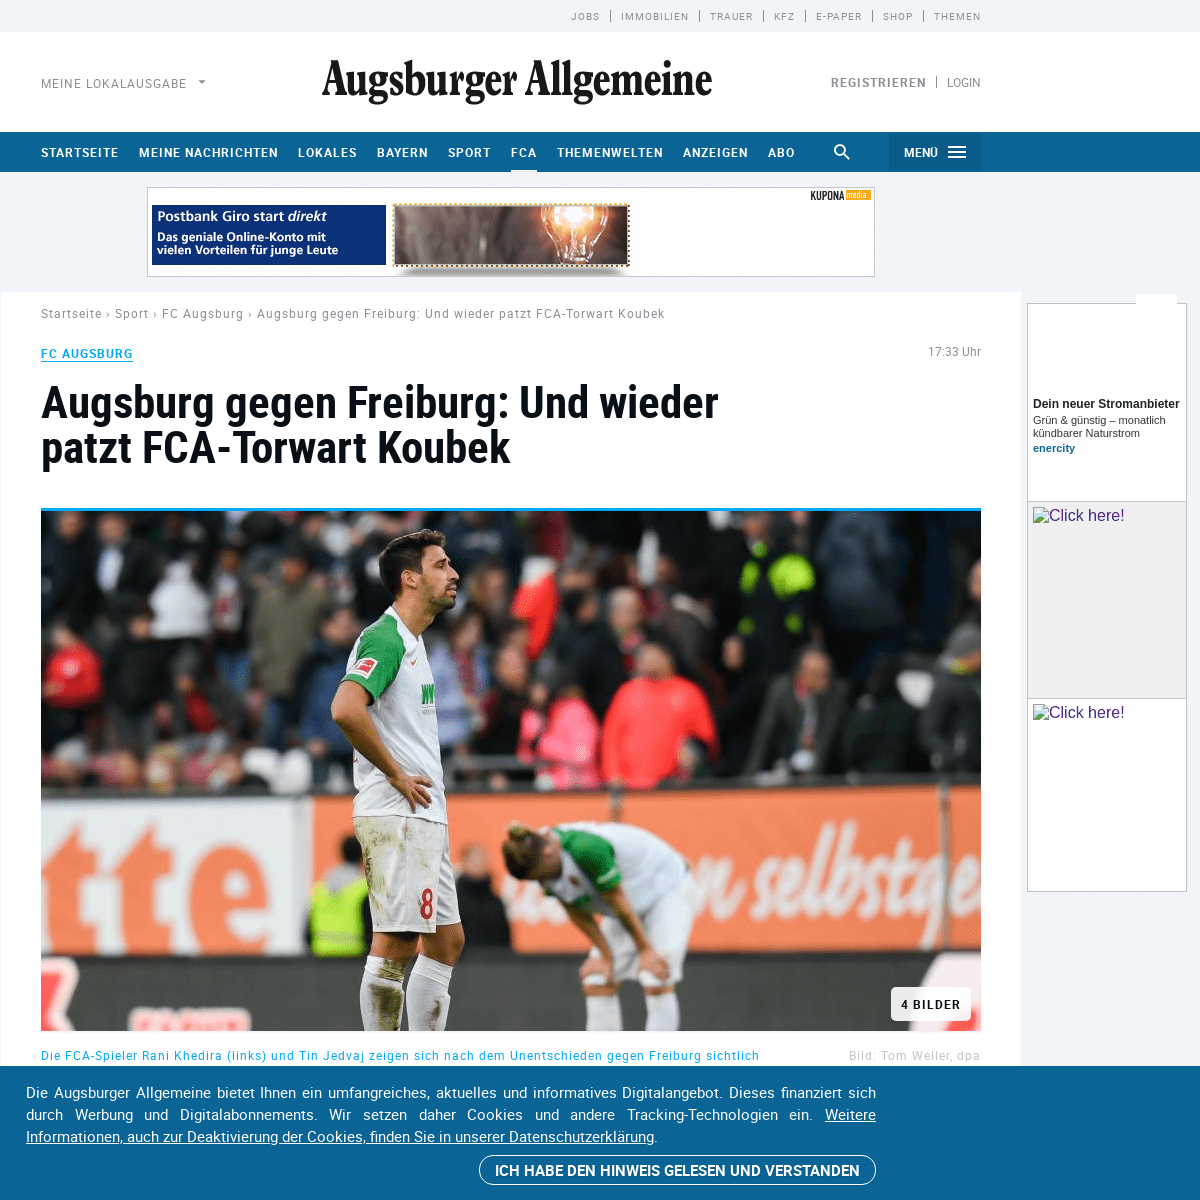 A complete backup of www.augsburger-allgemeine.de/sport/fc-augsburg/Augsburg-gegen-Freiburg-Und-wieder-patzt-FCA-Torwart-Koubek-